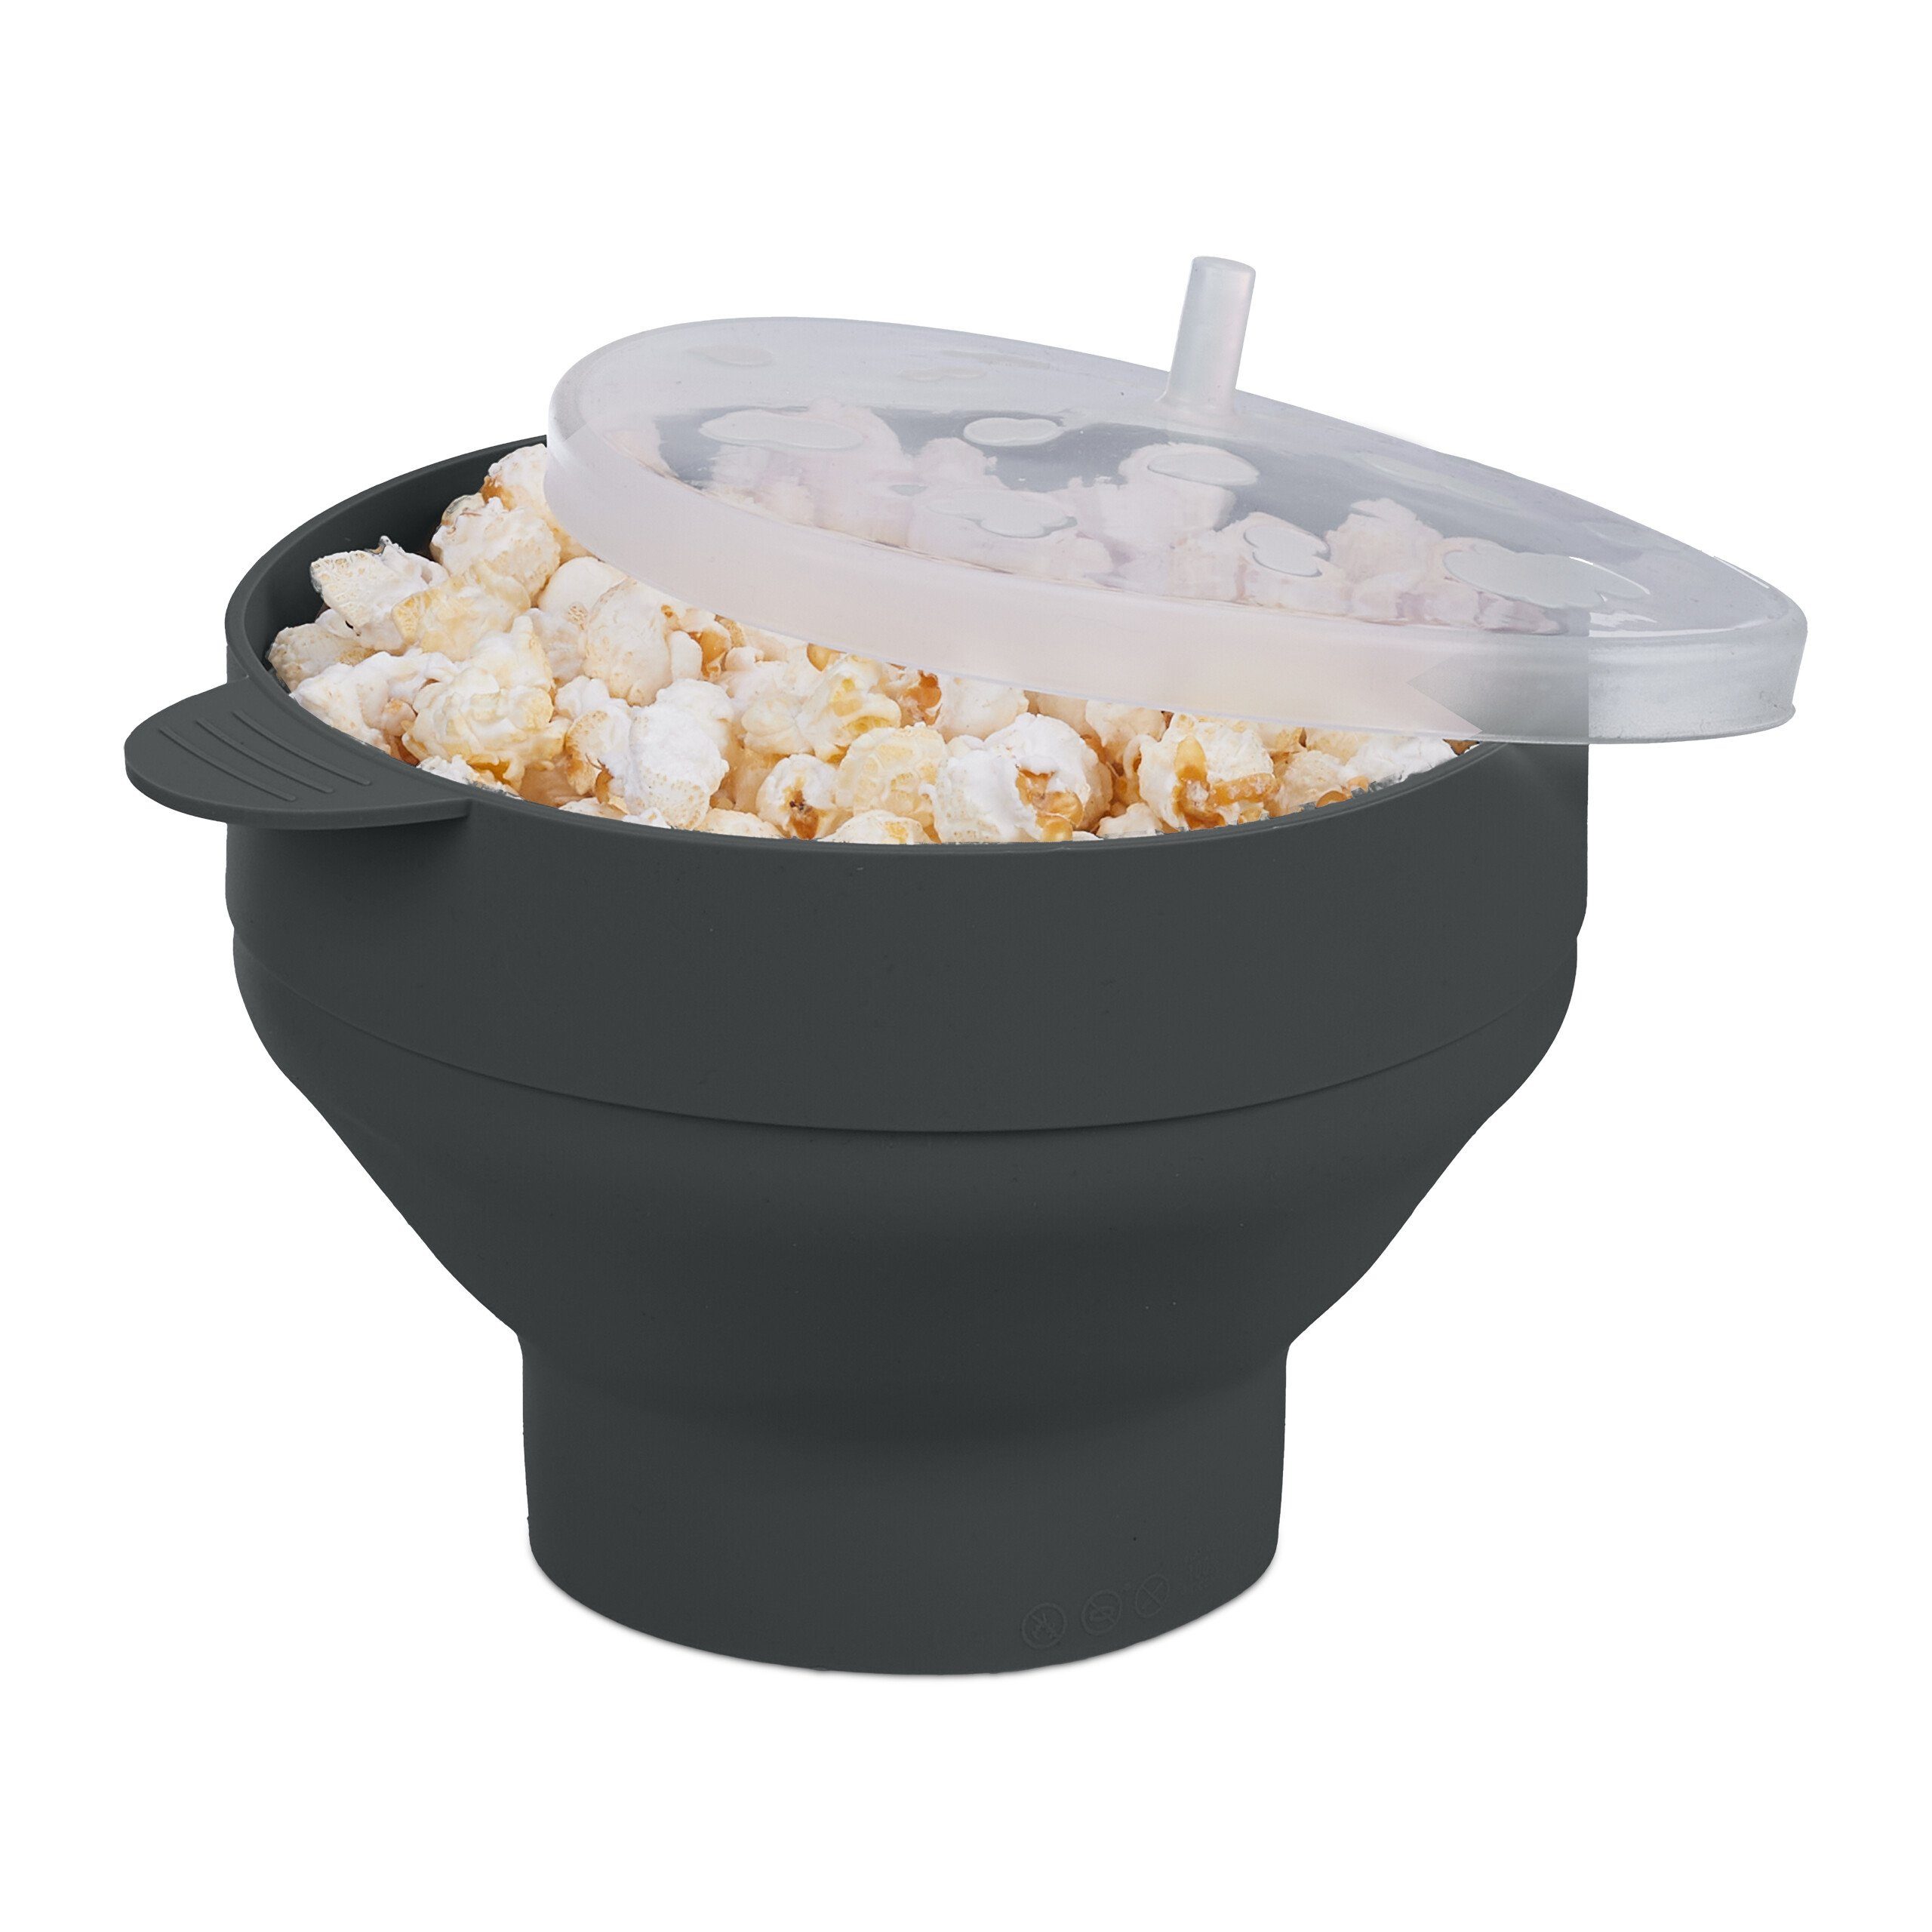 relaxdays Schüssel Popcorn Maker für Silikon, Mikrowelle, Transparent Schwarz Schwarz